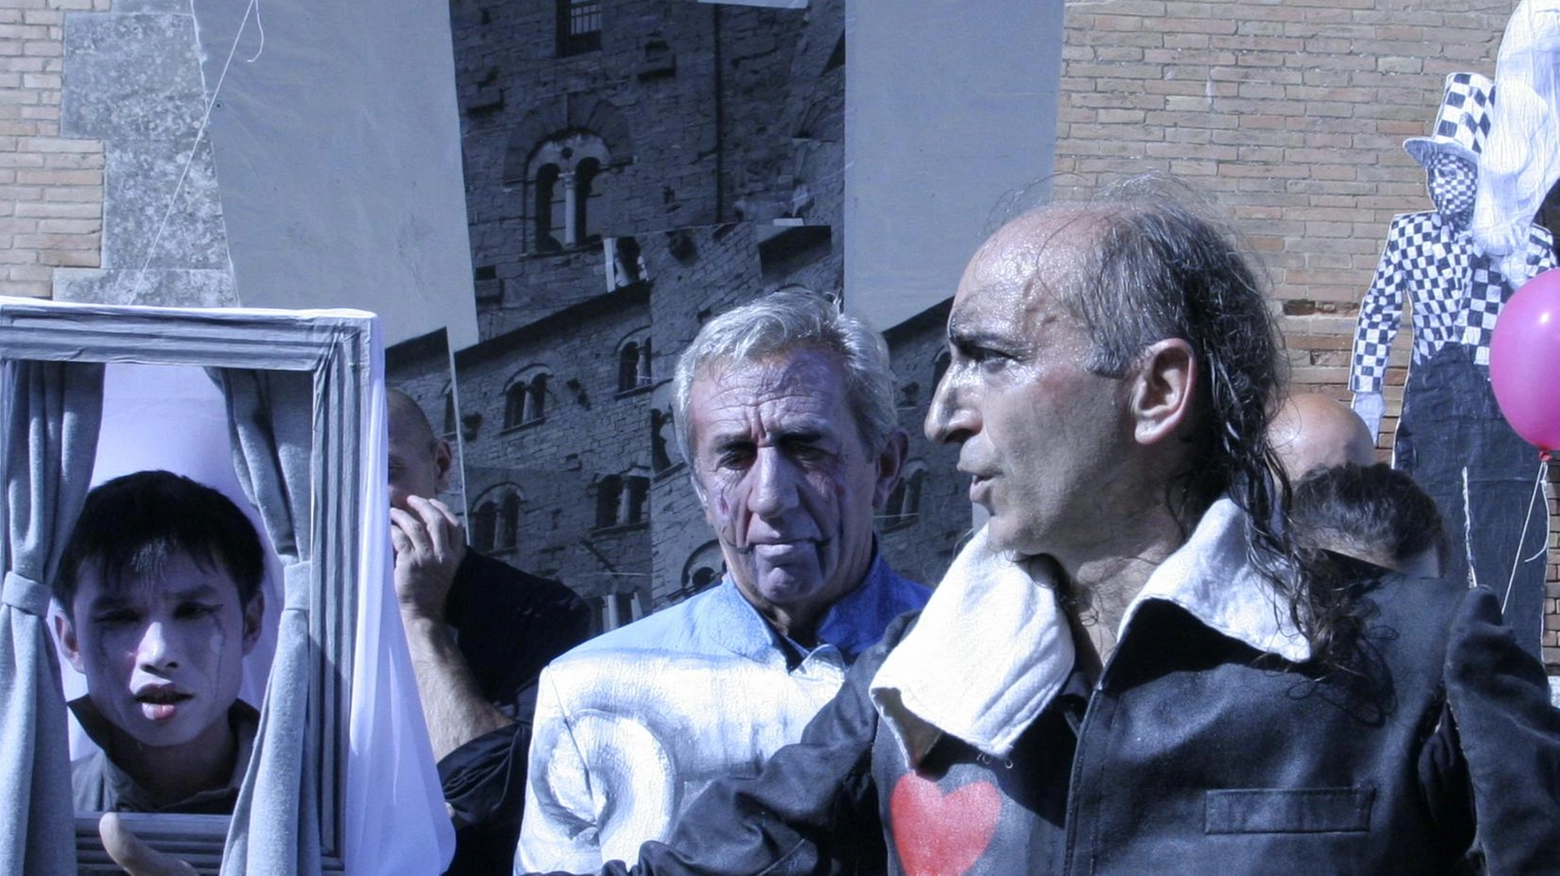 Il teatro esce dal carcere  Punzo: "Stop ai pregiudizi"